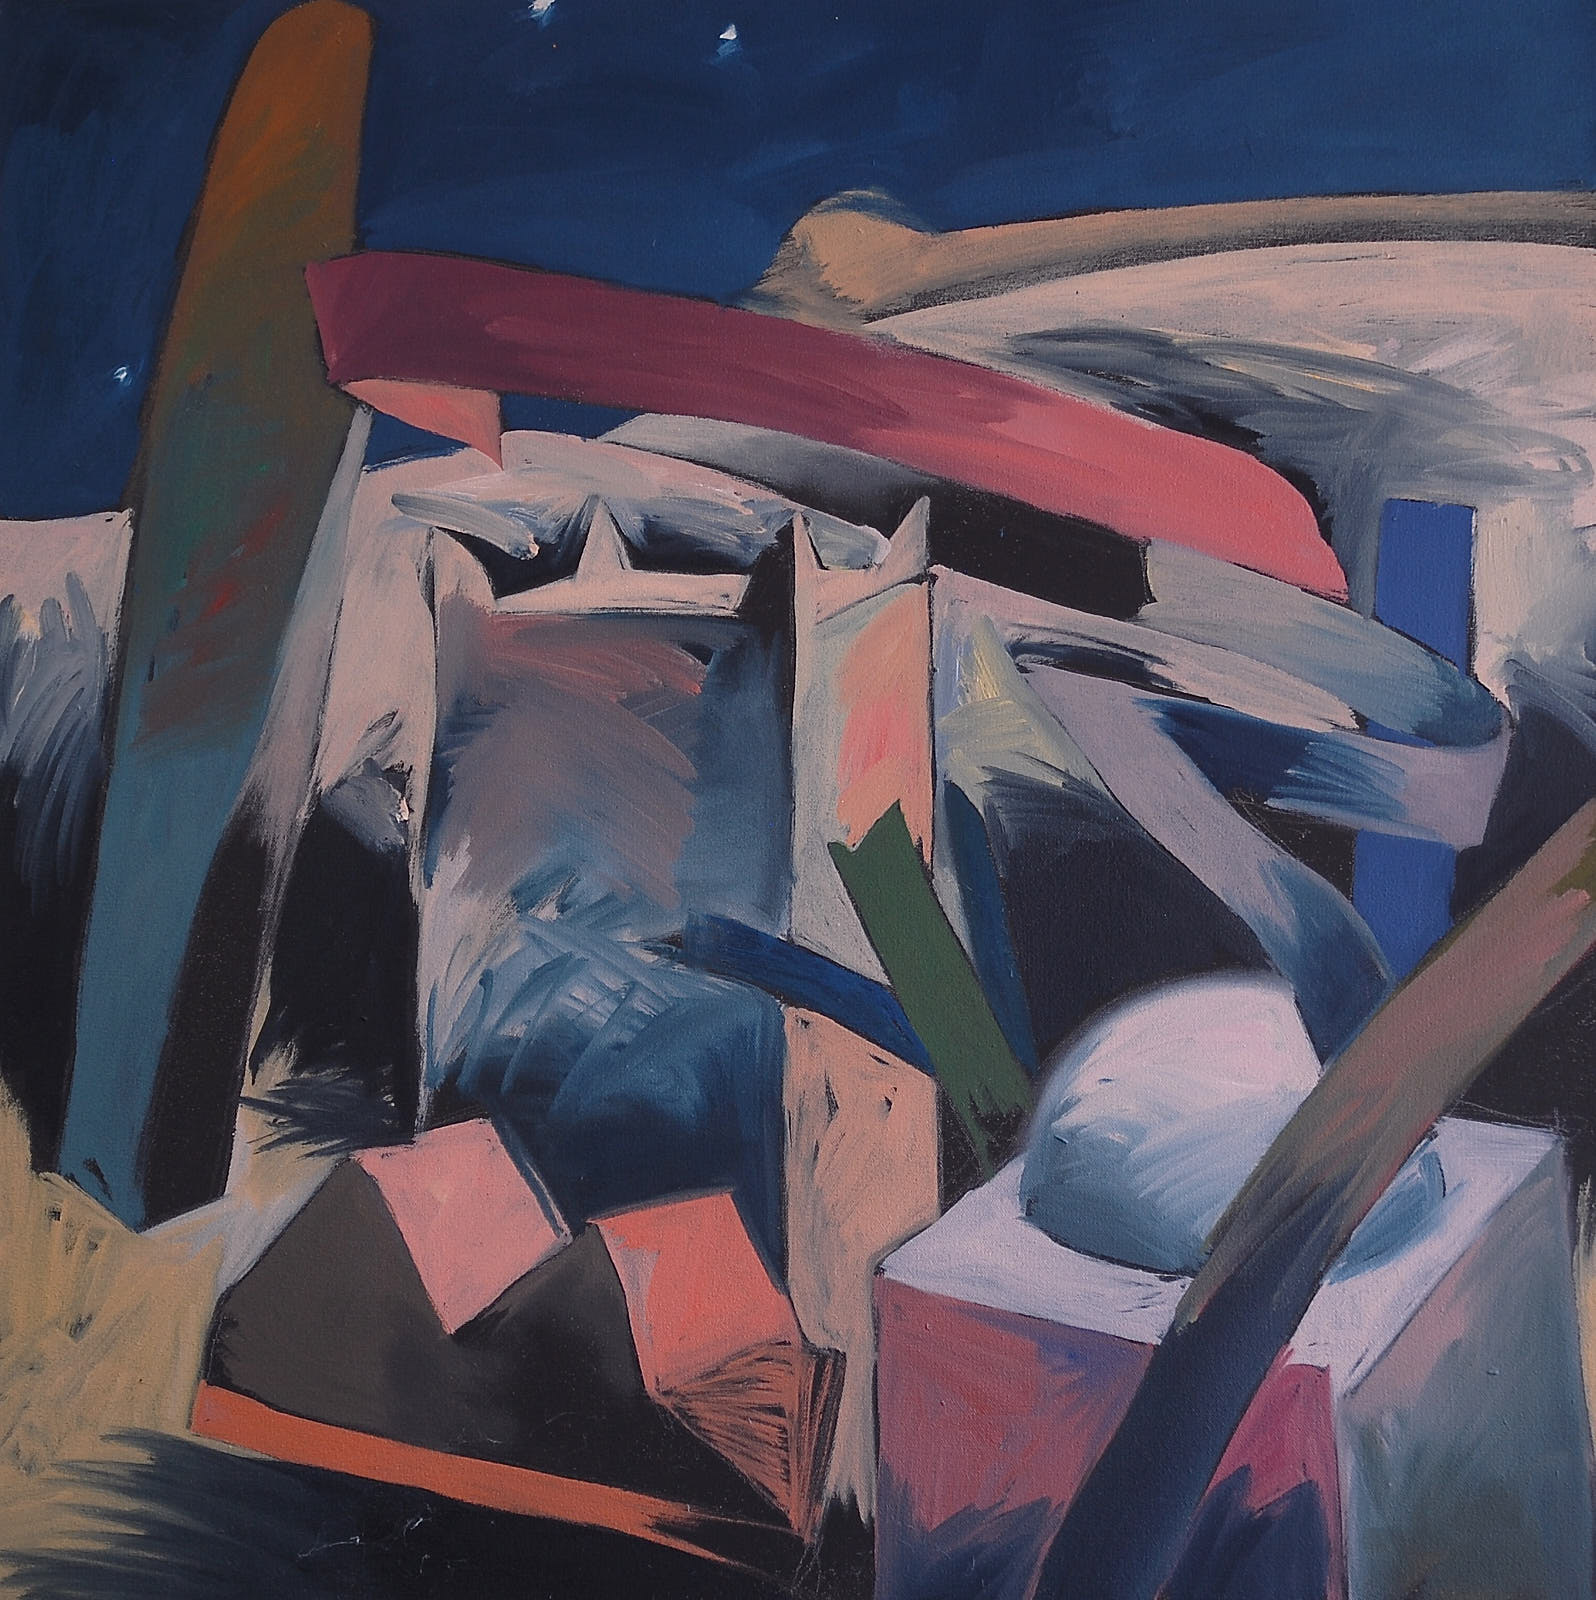 Desert Night #2, 2000 oil on canvas. 27 x 27''